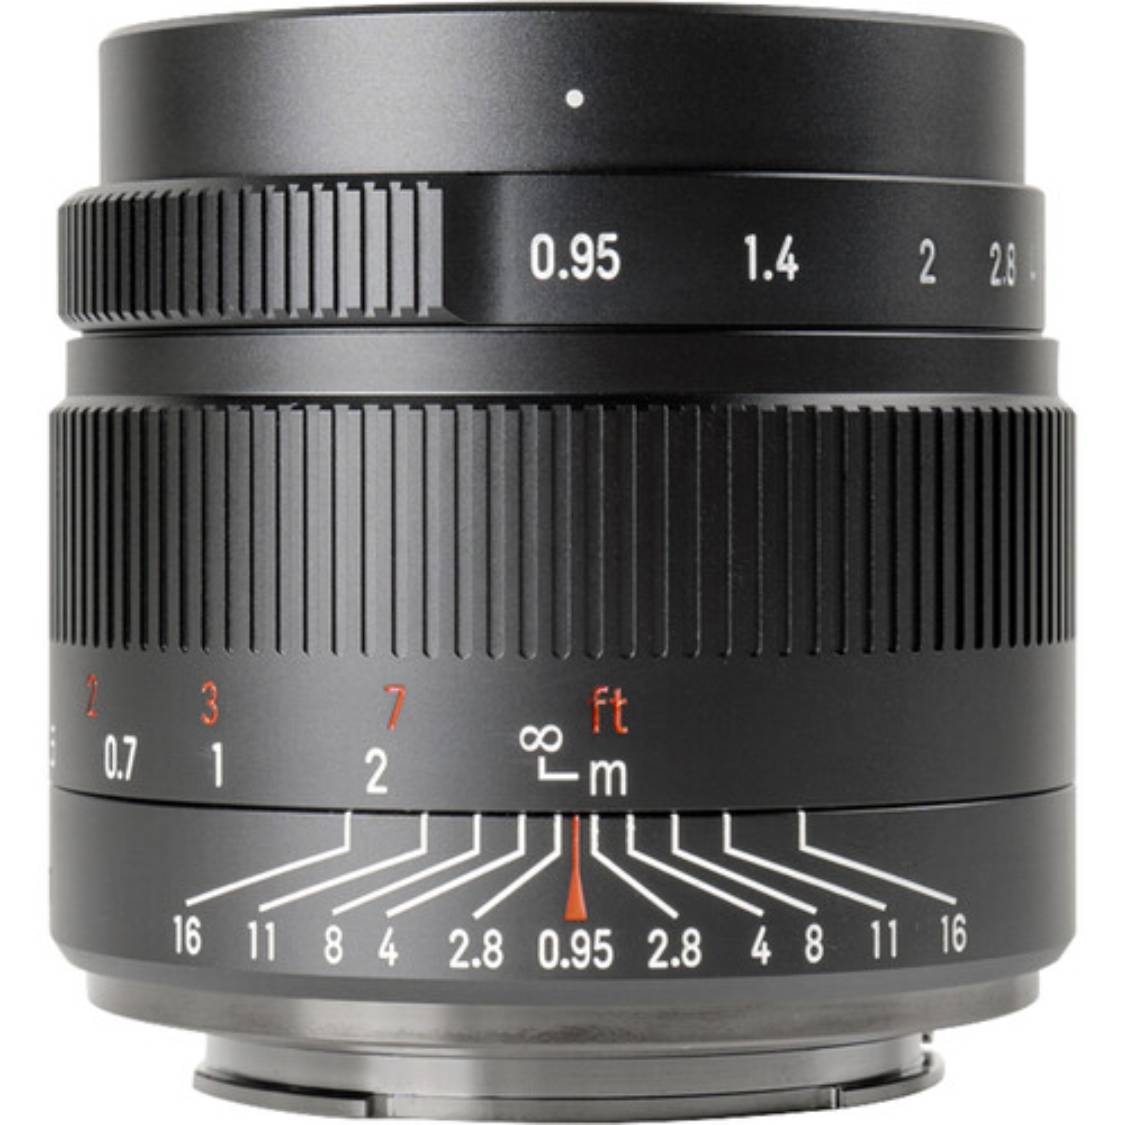 7artisans 35mm f/0.95 Lens for Micro 4/3